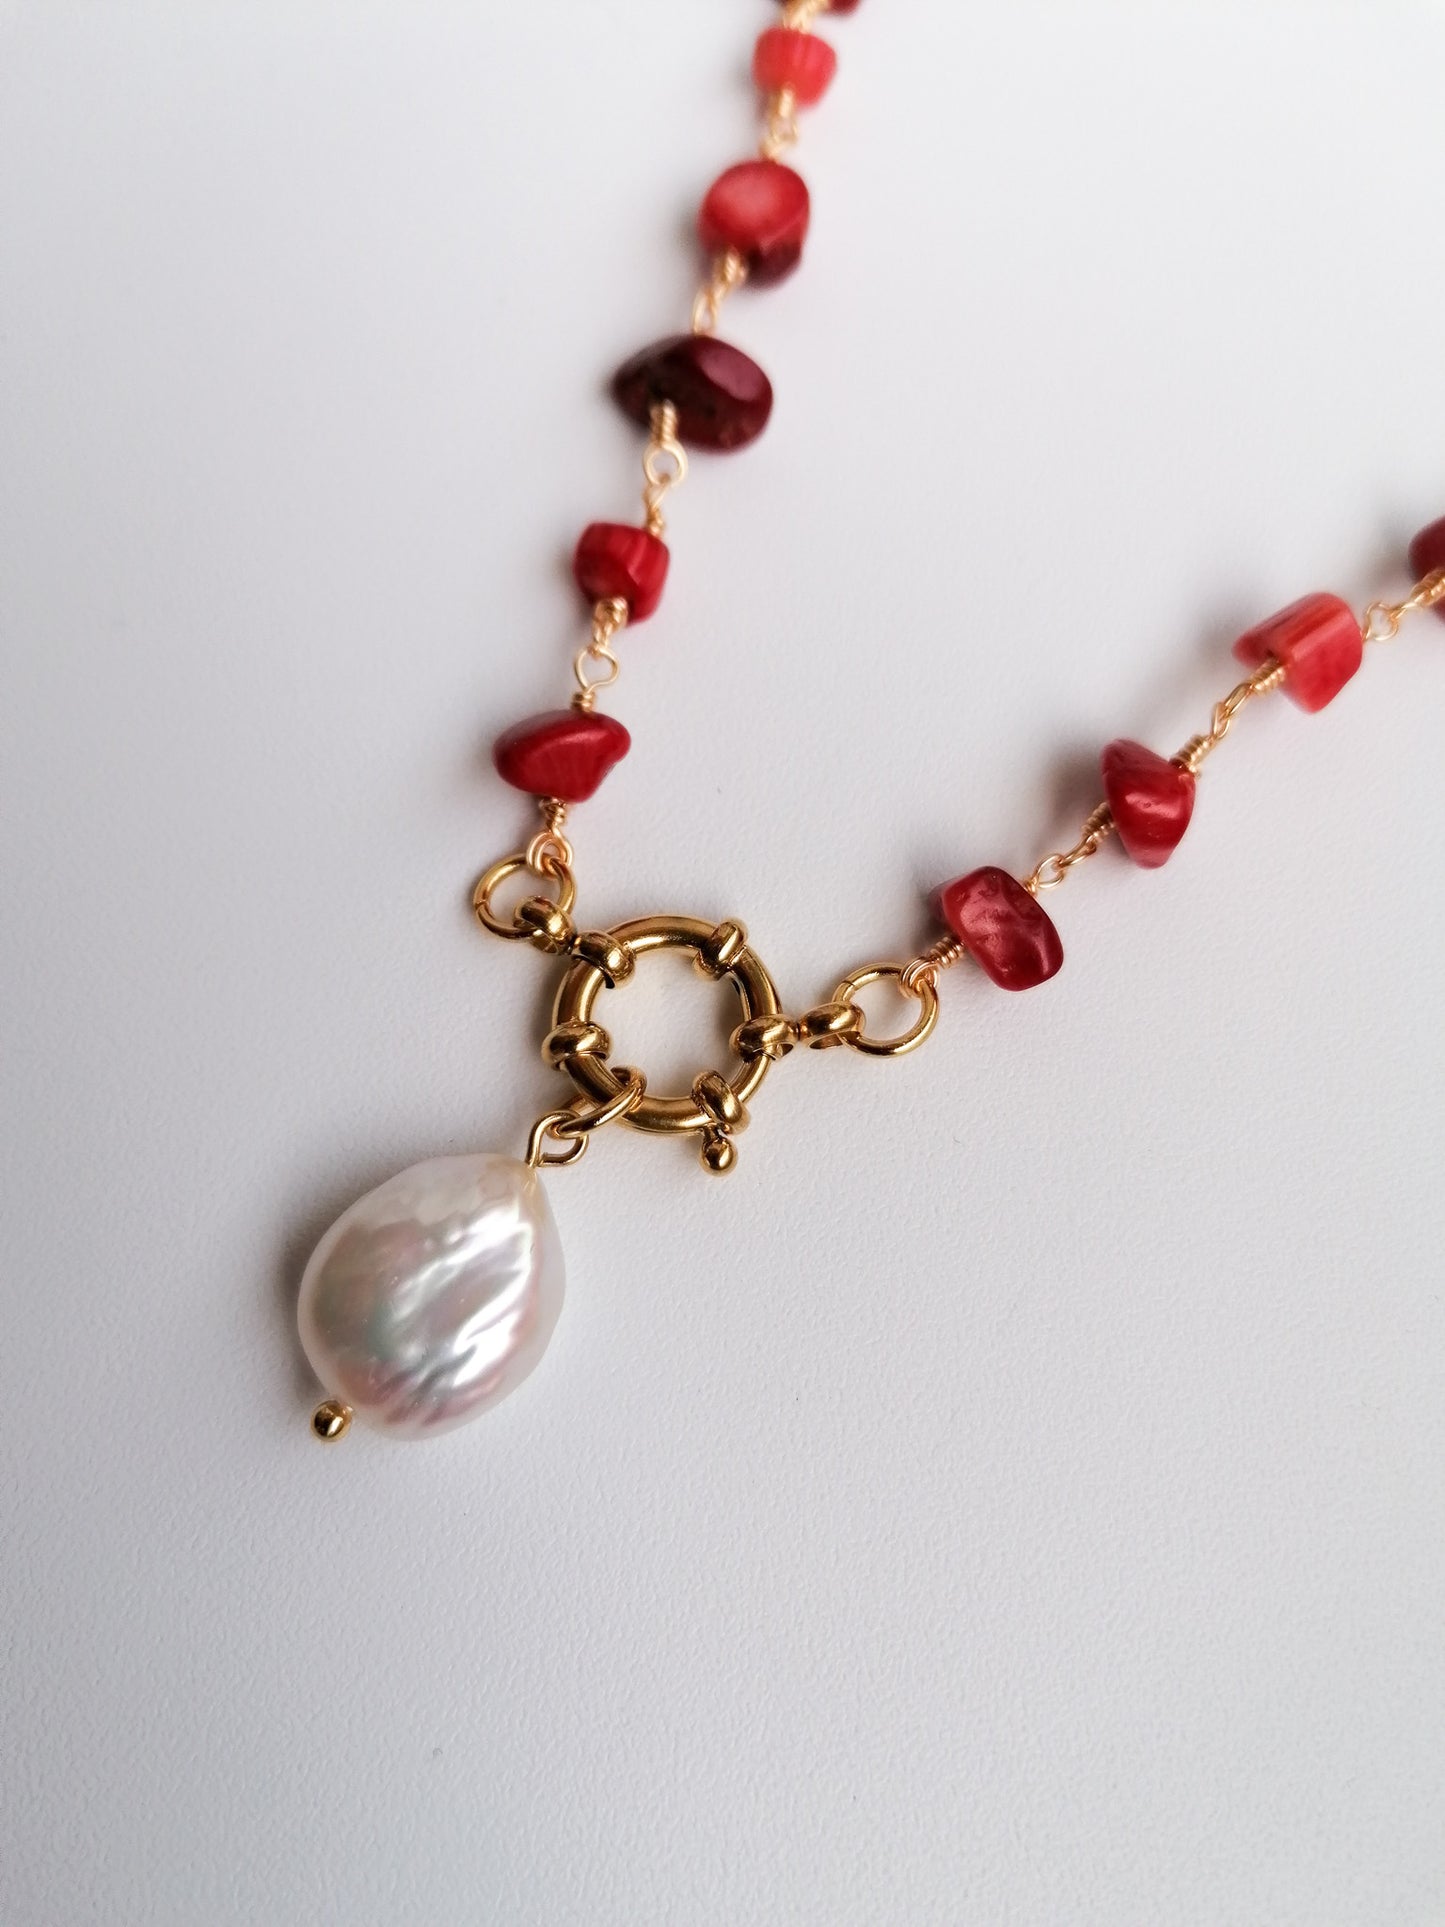 Sardinia necklace